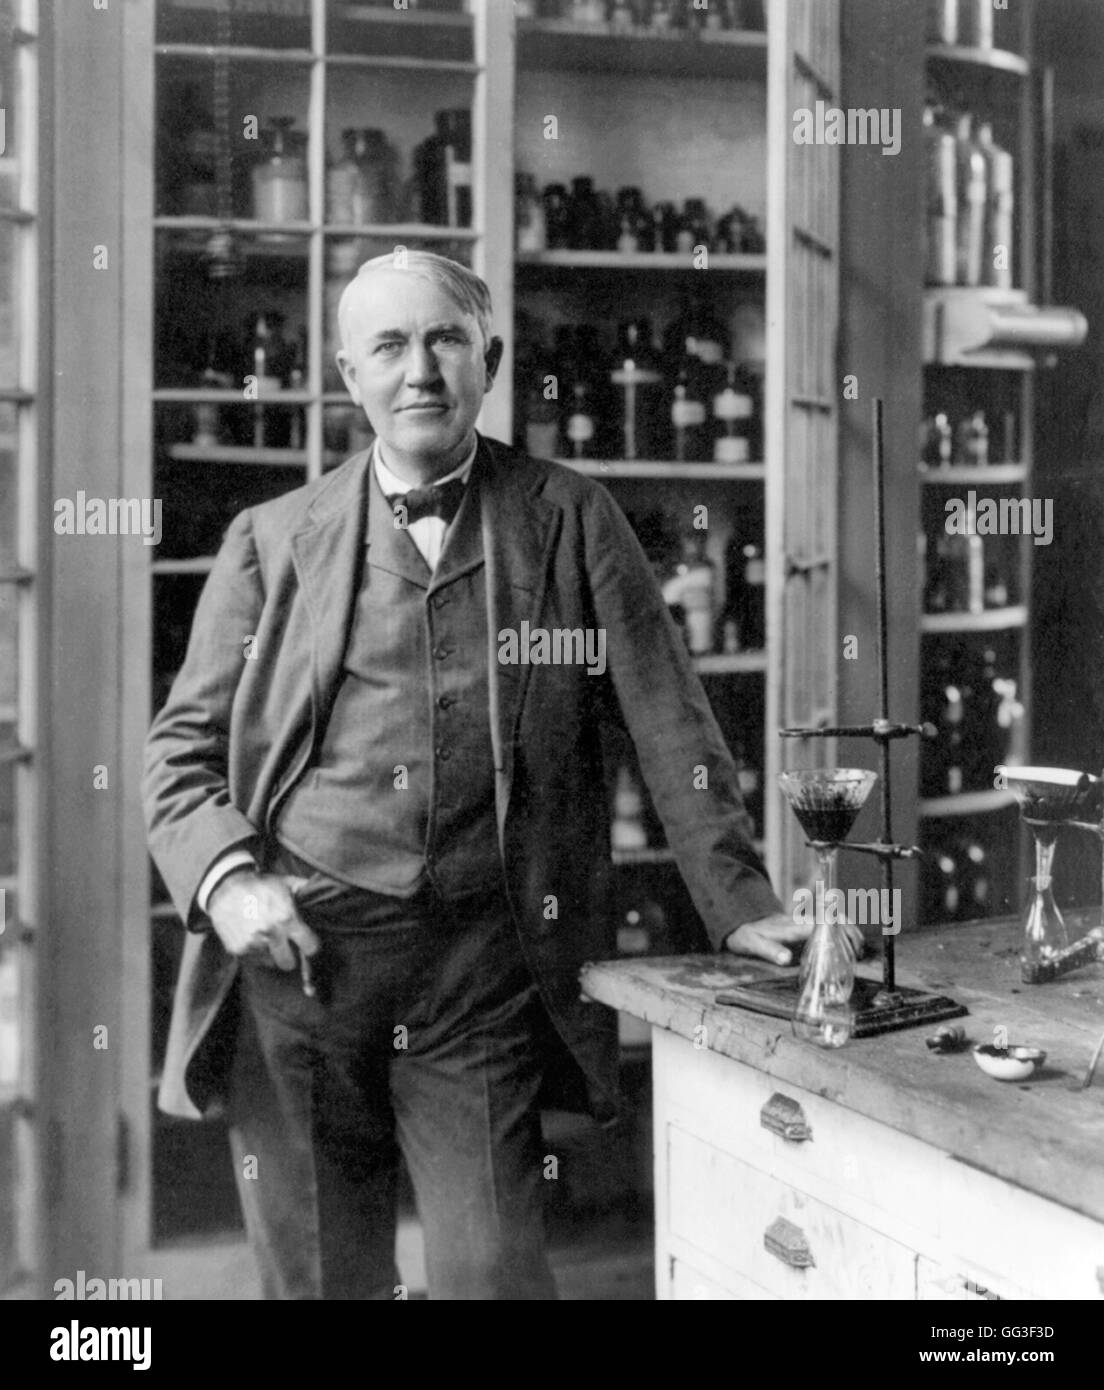 Thomas Edison. Porträt des amerikanischen Erfinders und Geschäftsmannes, Thomas Alva Edison (1847-1931), in seinem Labor. Porträt ca. 1904. Stockfoto